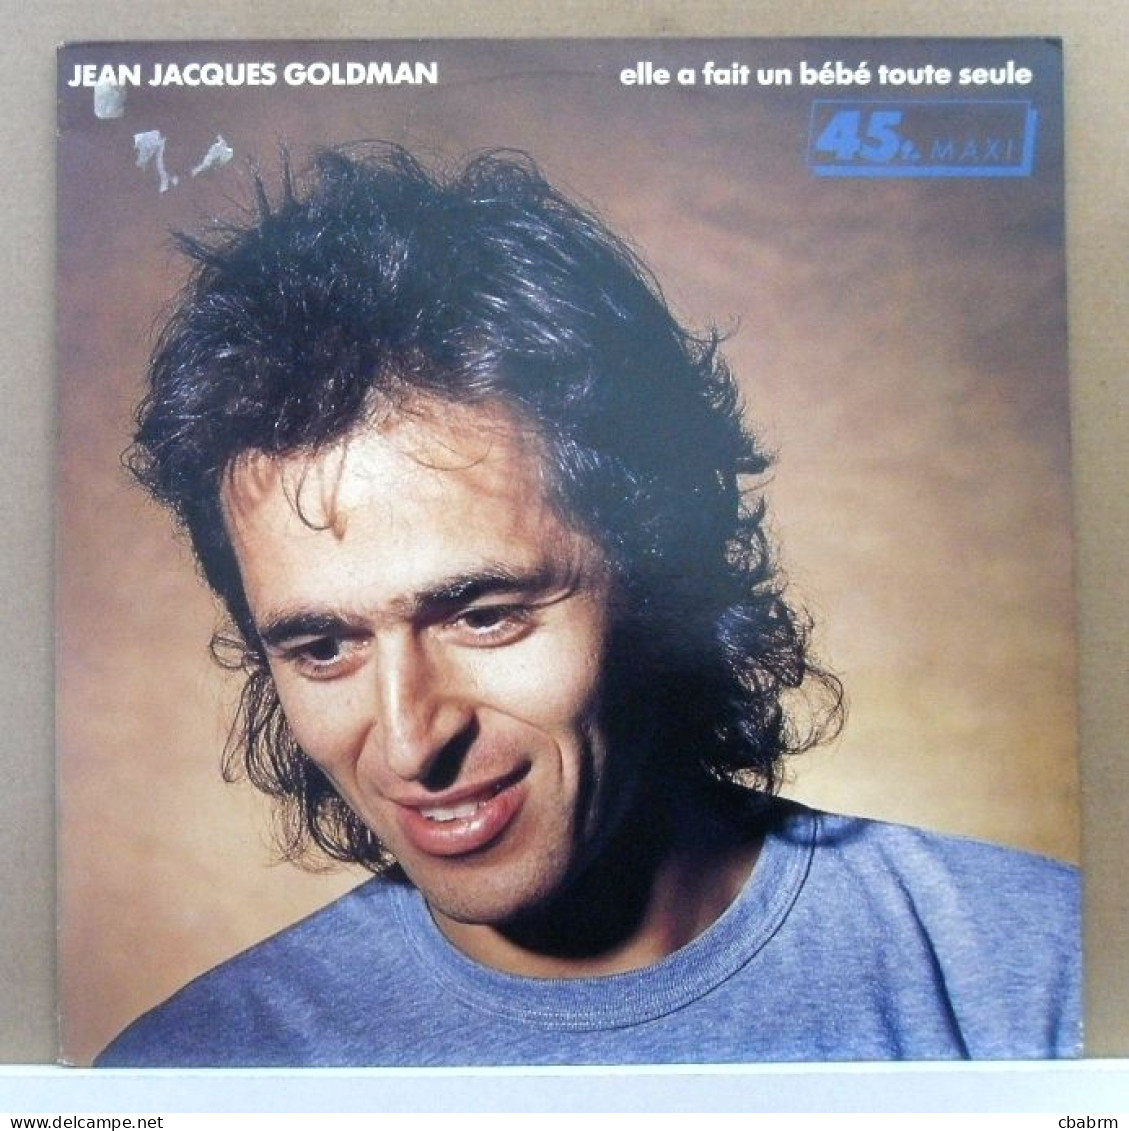 MAXI 45 TOURS JEAN-JACQUES GOLDMAN ELLE A FAIT UN BEBE TOUTE SEULE En 1987 - 45 Toeren - Maxi-Single